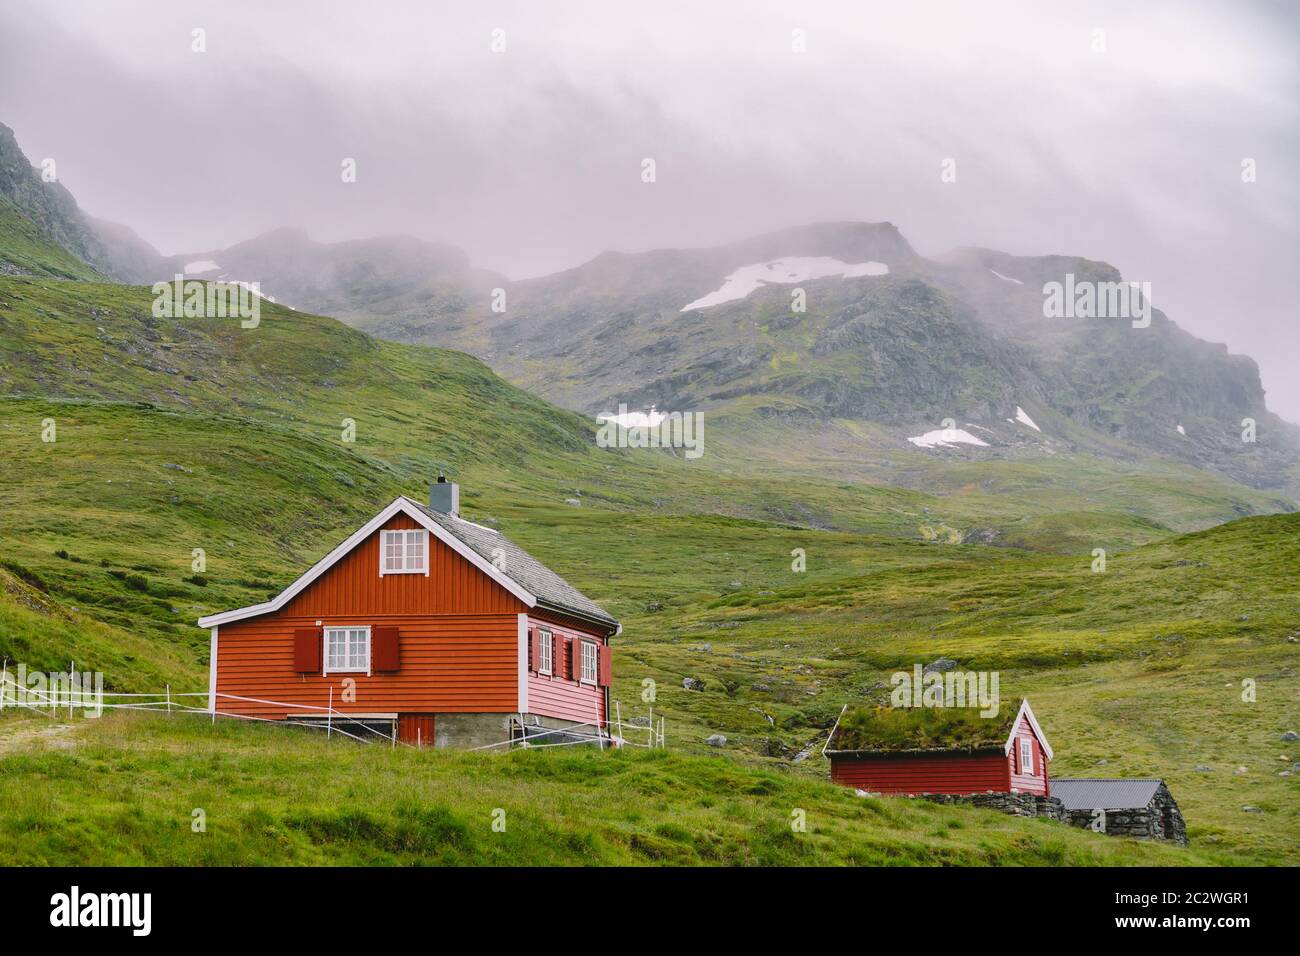 Huttes de montagne en bois de refuge en Norvège. Paysage norvégien avec des maisons typiques scandinaves en herbe sur le toit. Vill de montagne Banque D'Images